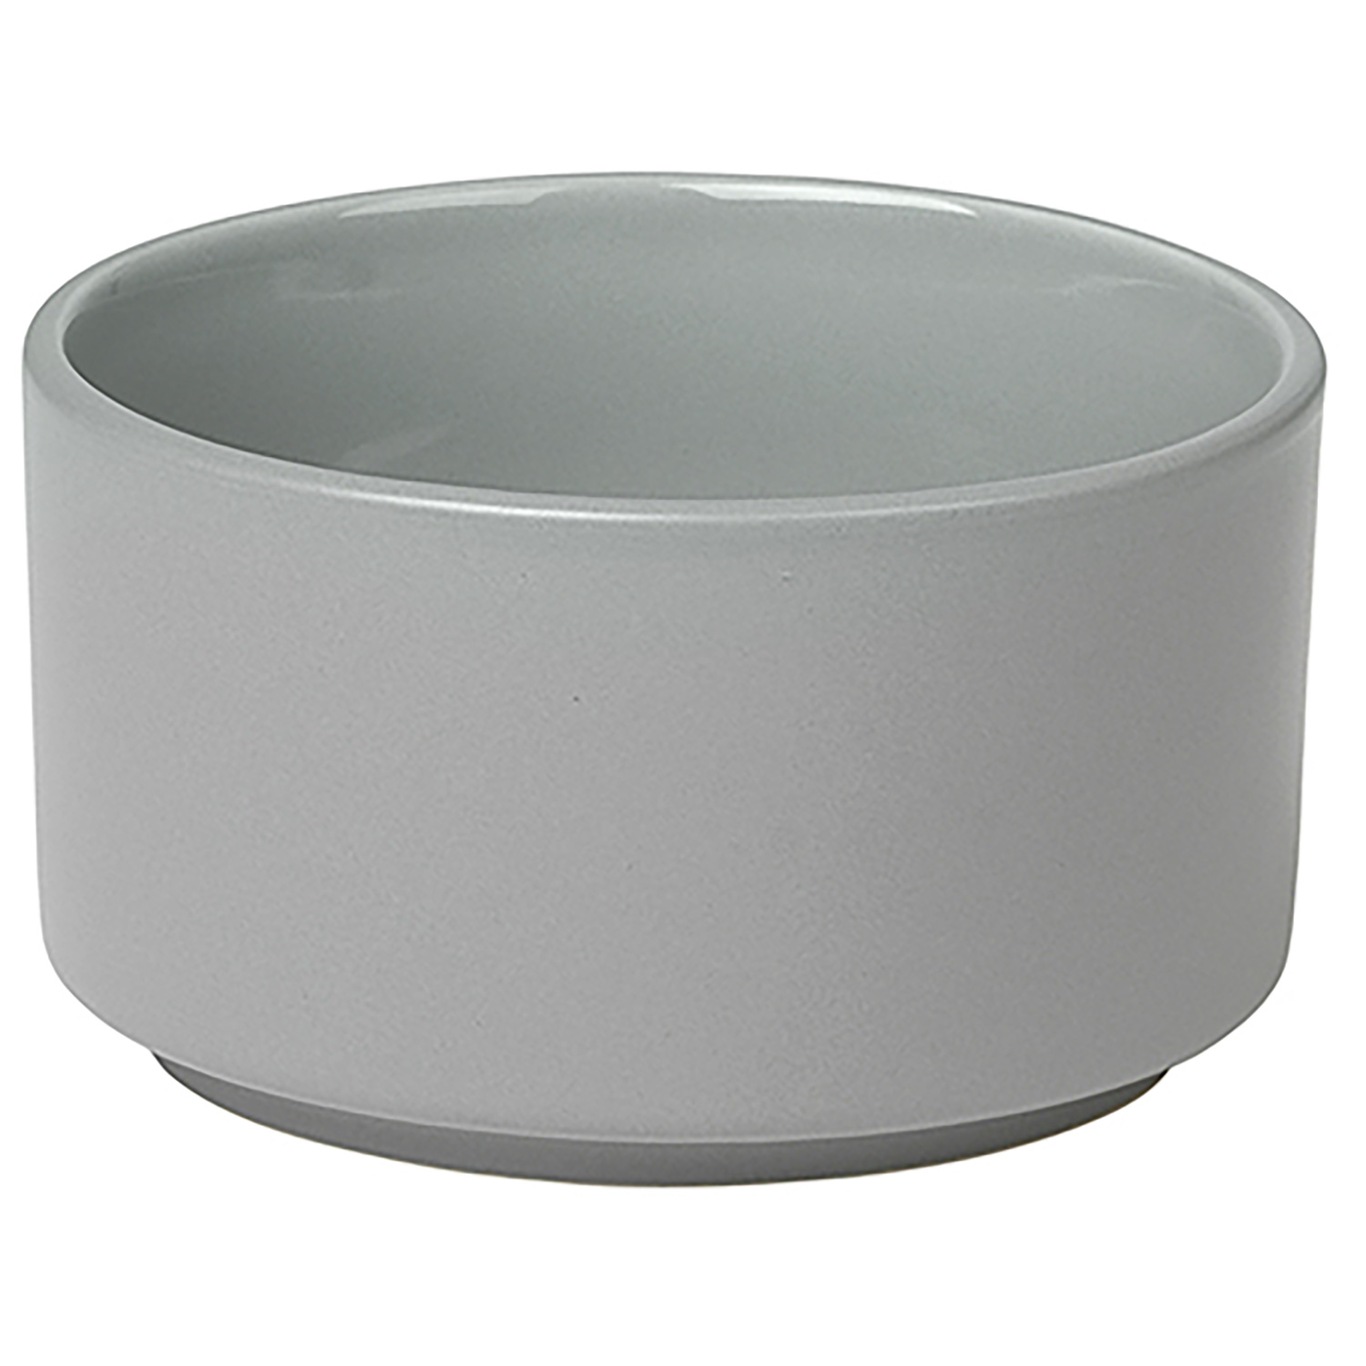 Pilar Bowl, Mirage grey